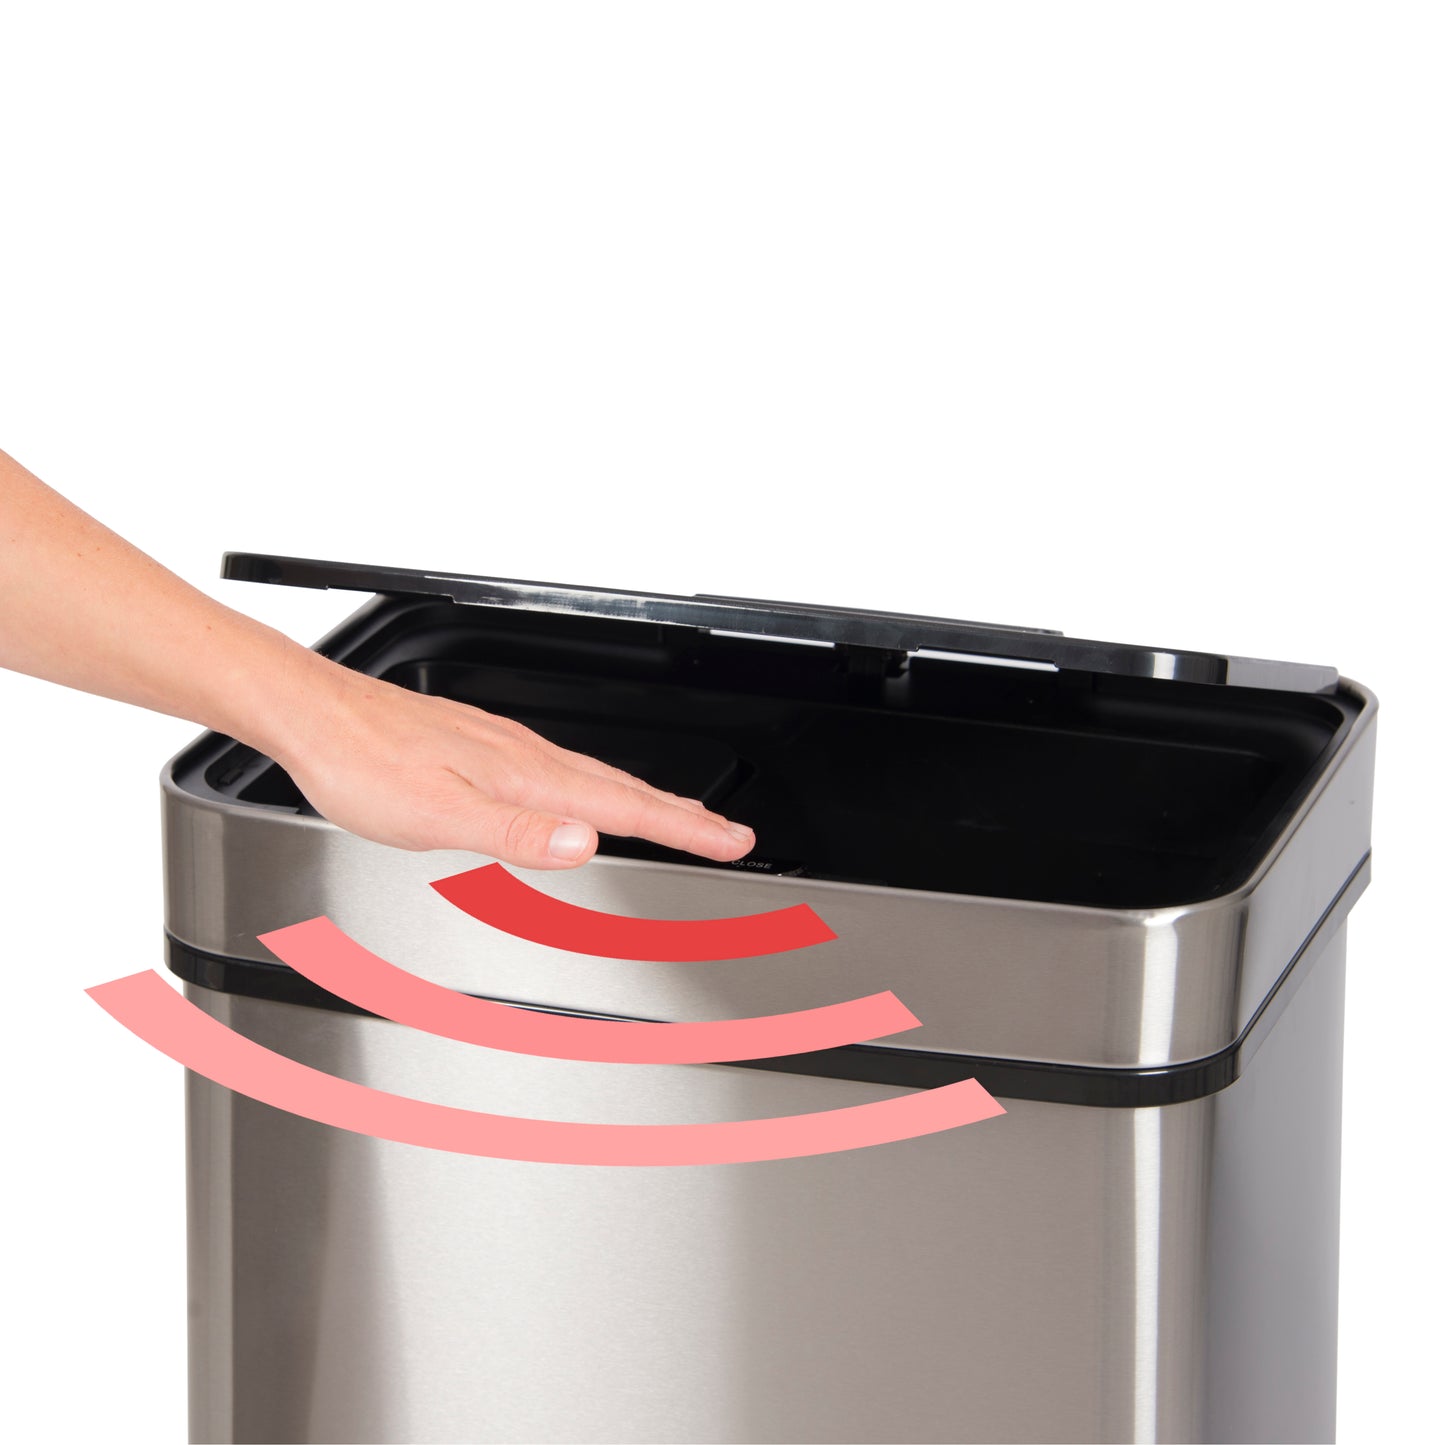 Trebs 99359 - Waste Bin / Comfortliving 50l with infrared sensor and bin bag holder